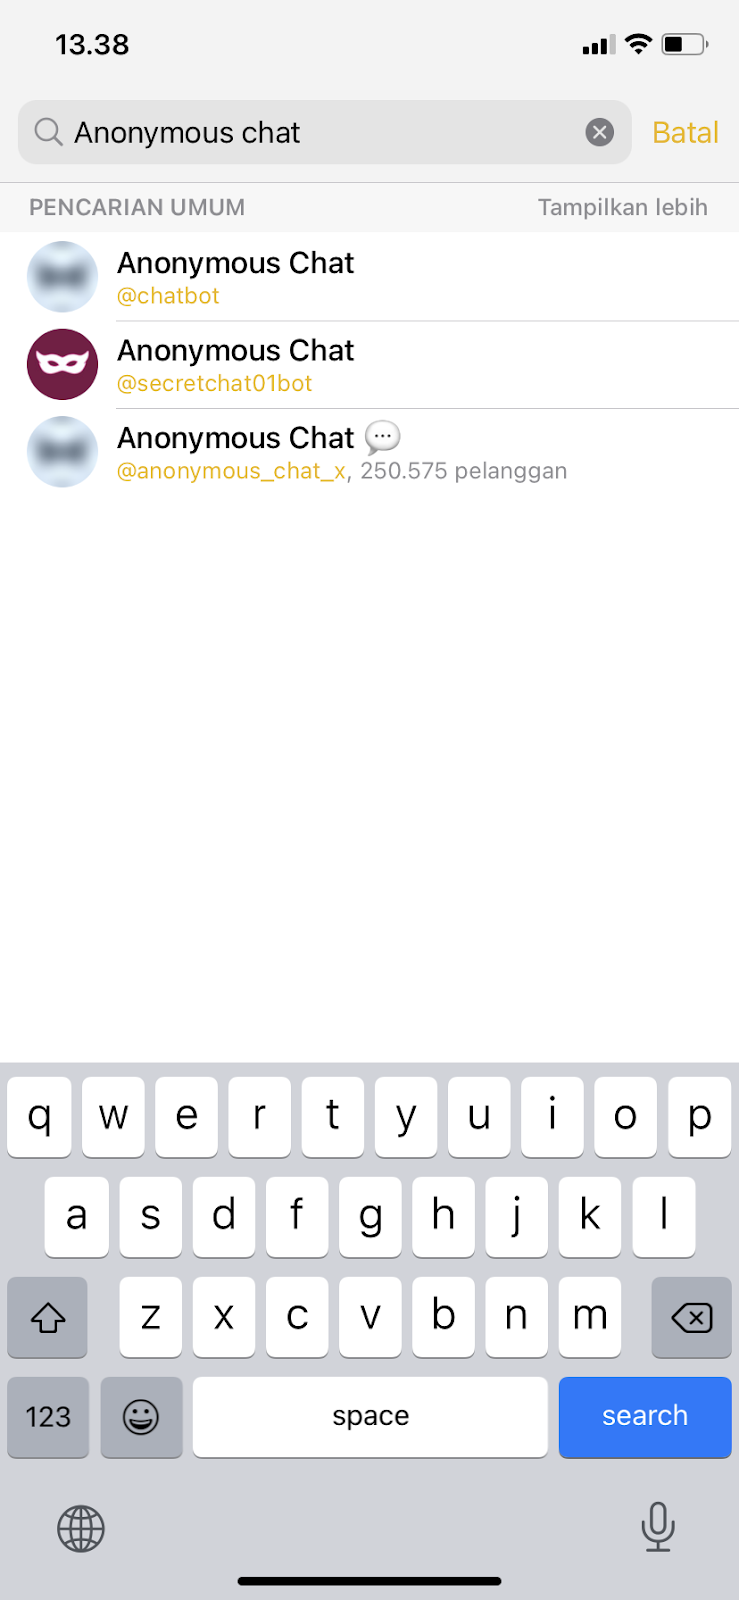 Cari teman di telegram selain anonymous chat